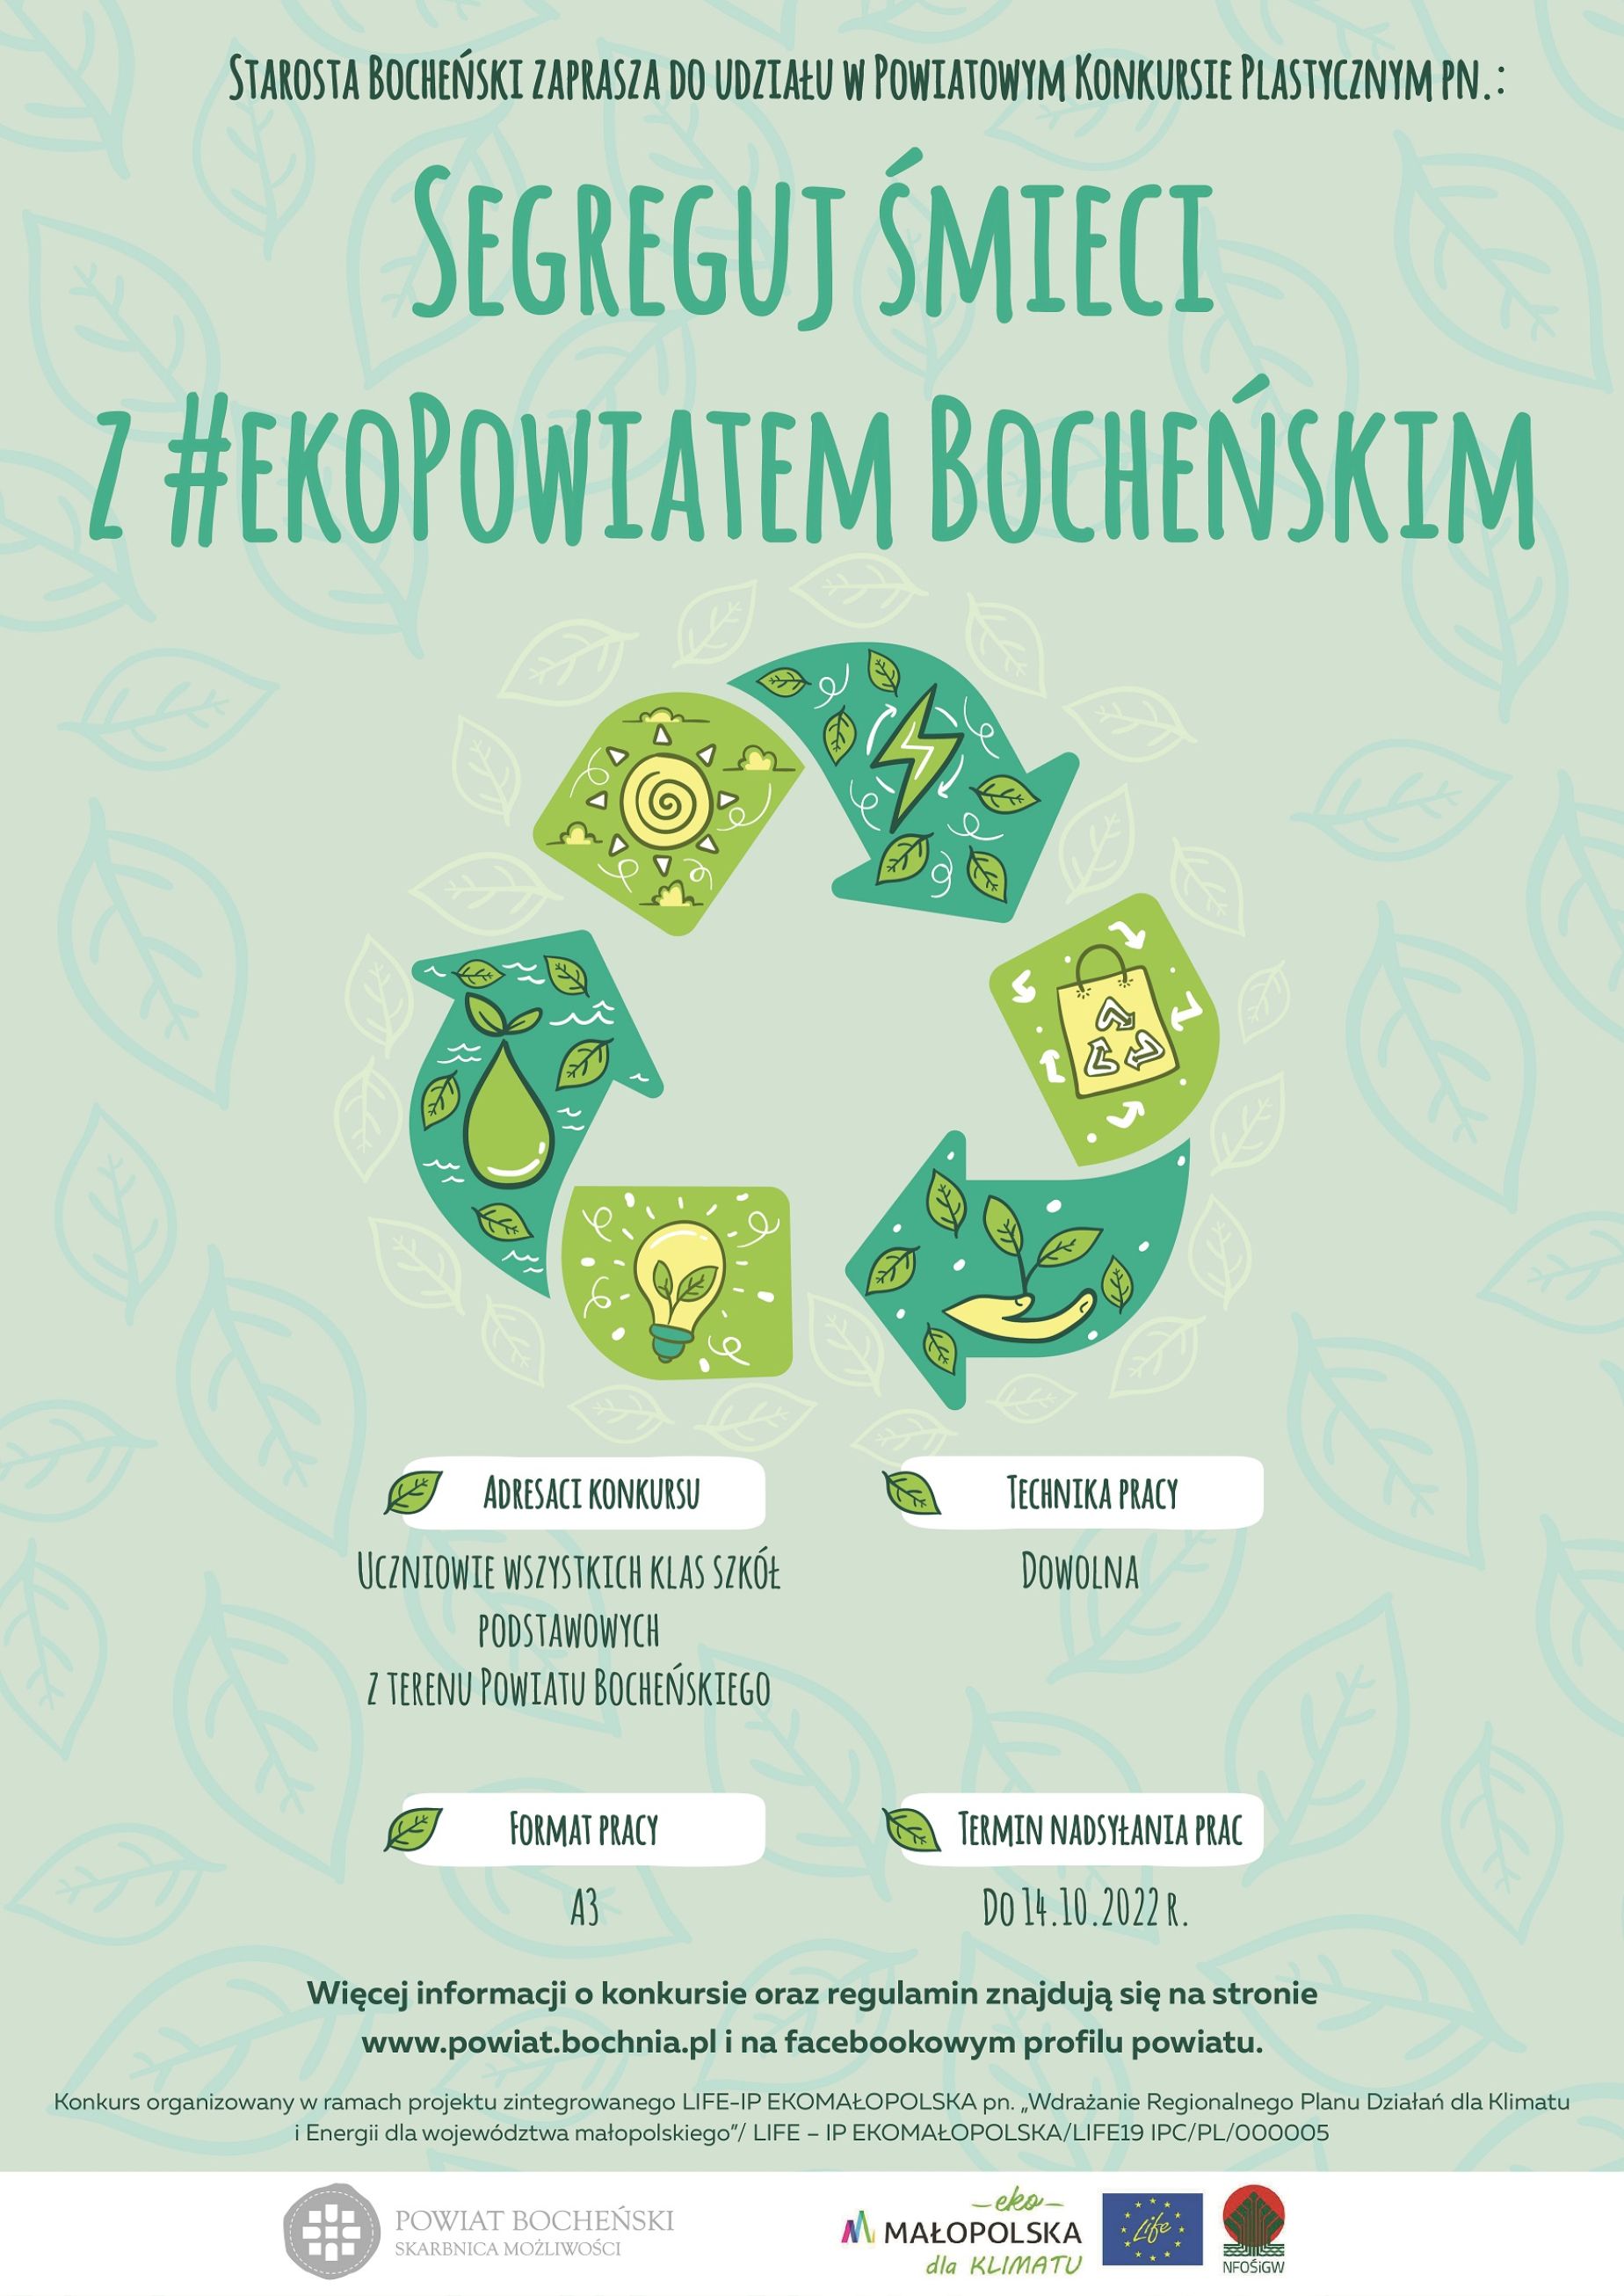 Segreguj śmieci z #ekoPowiatem Bocheńskim